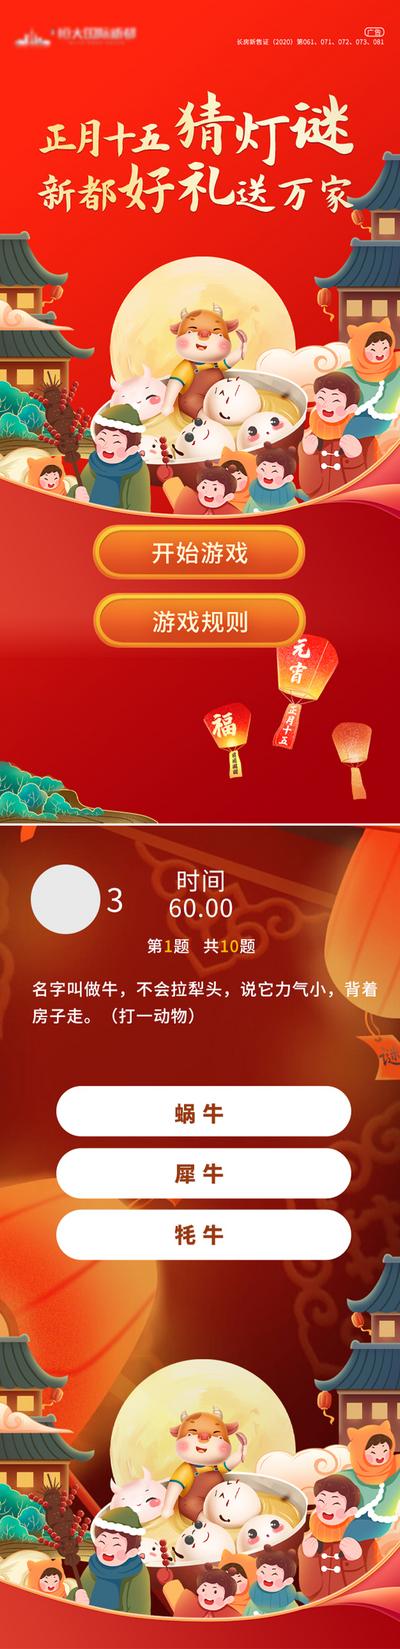 南门网 专题设计 H5 房地产 元宵节 猜灯谜 活动 卡通 花灯 